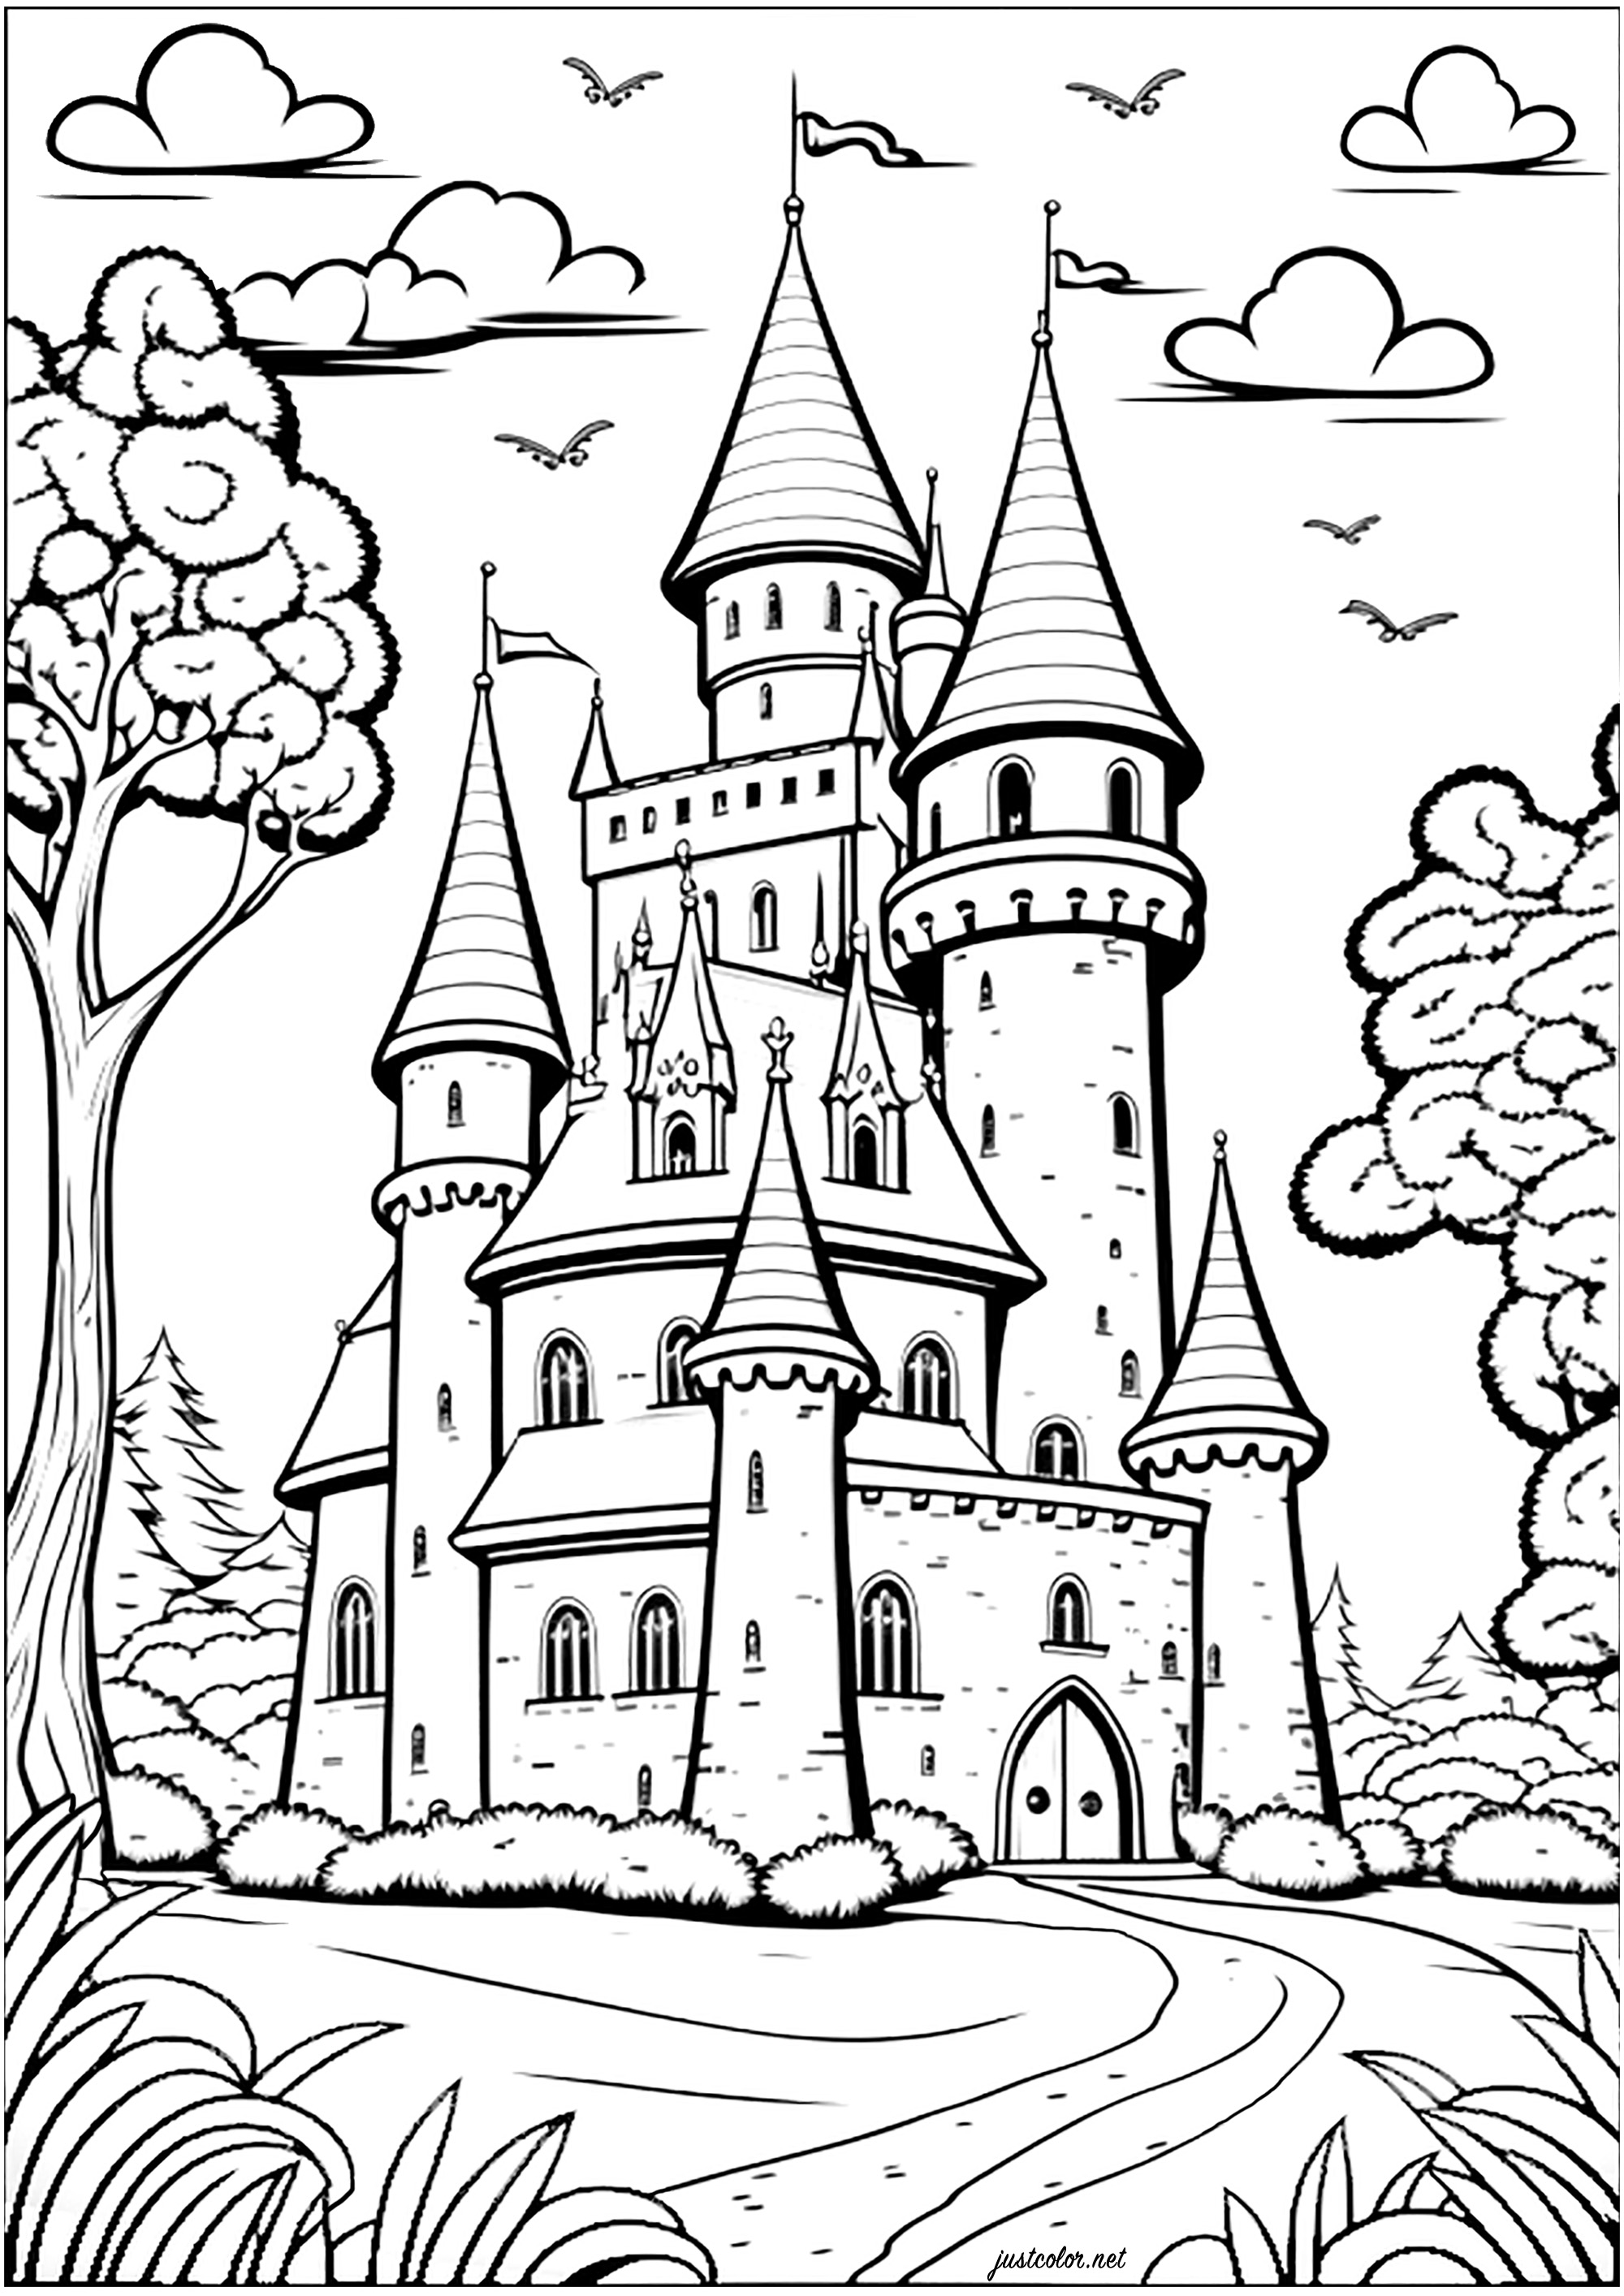 Coloriage d'un chateau d'un royaume imaginaire. Coloriez toutes ses tourelles, fenêtres, portes et murs pour un moment enchanté !, Artiste : IAsabelle